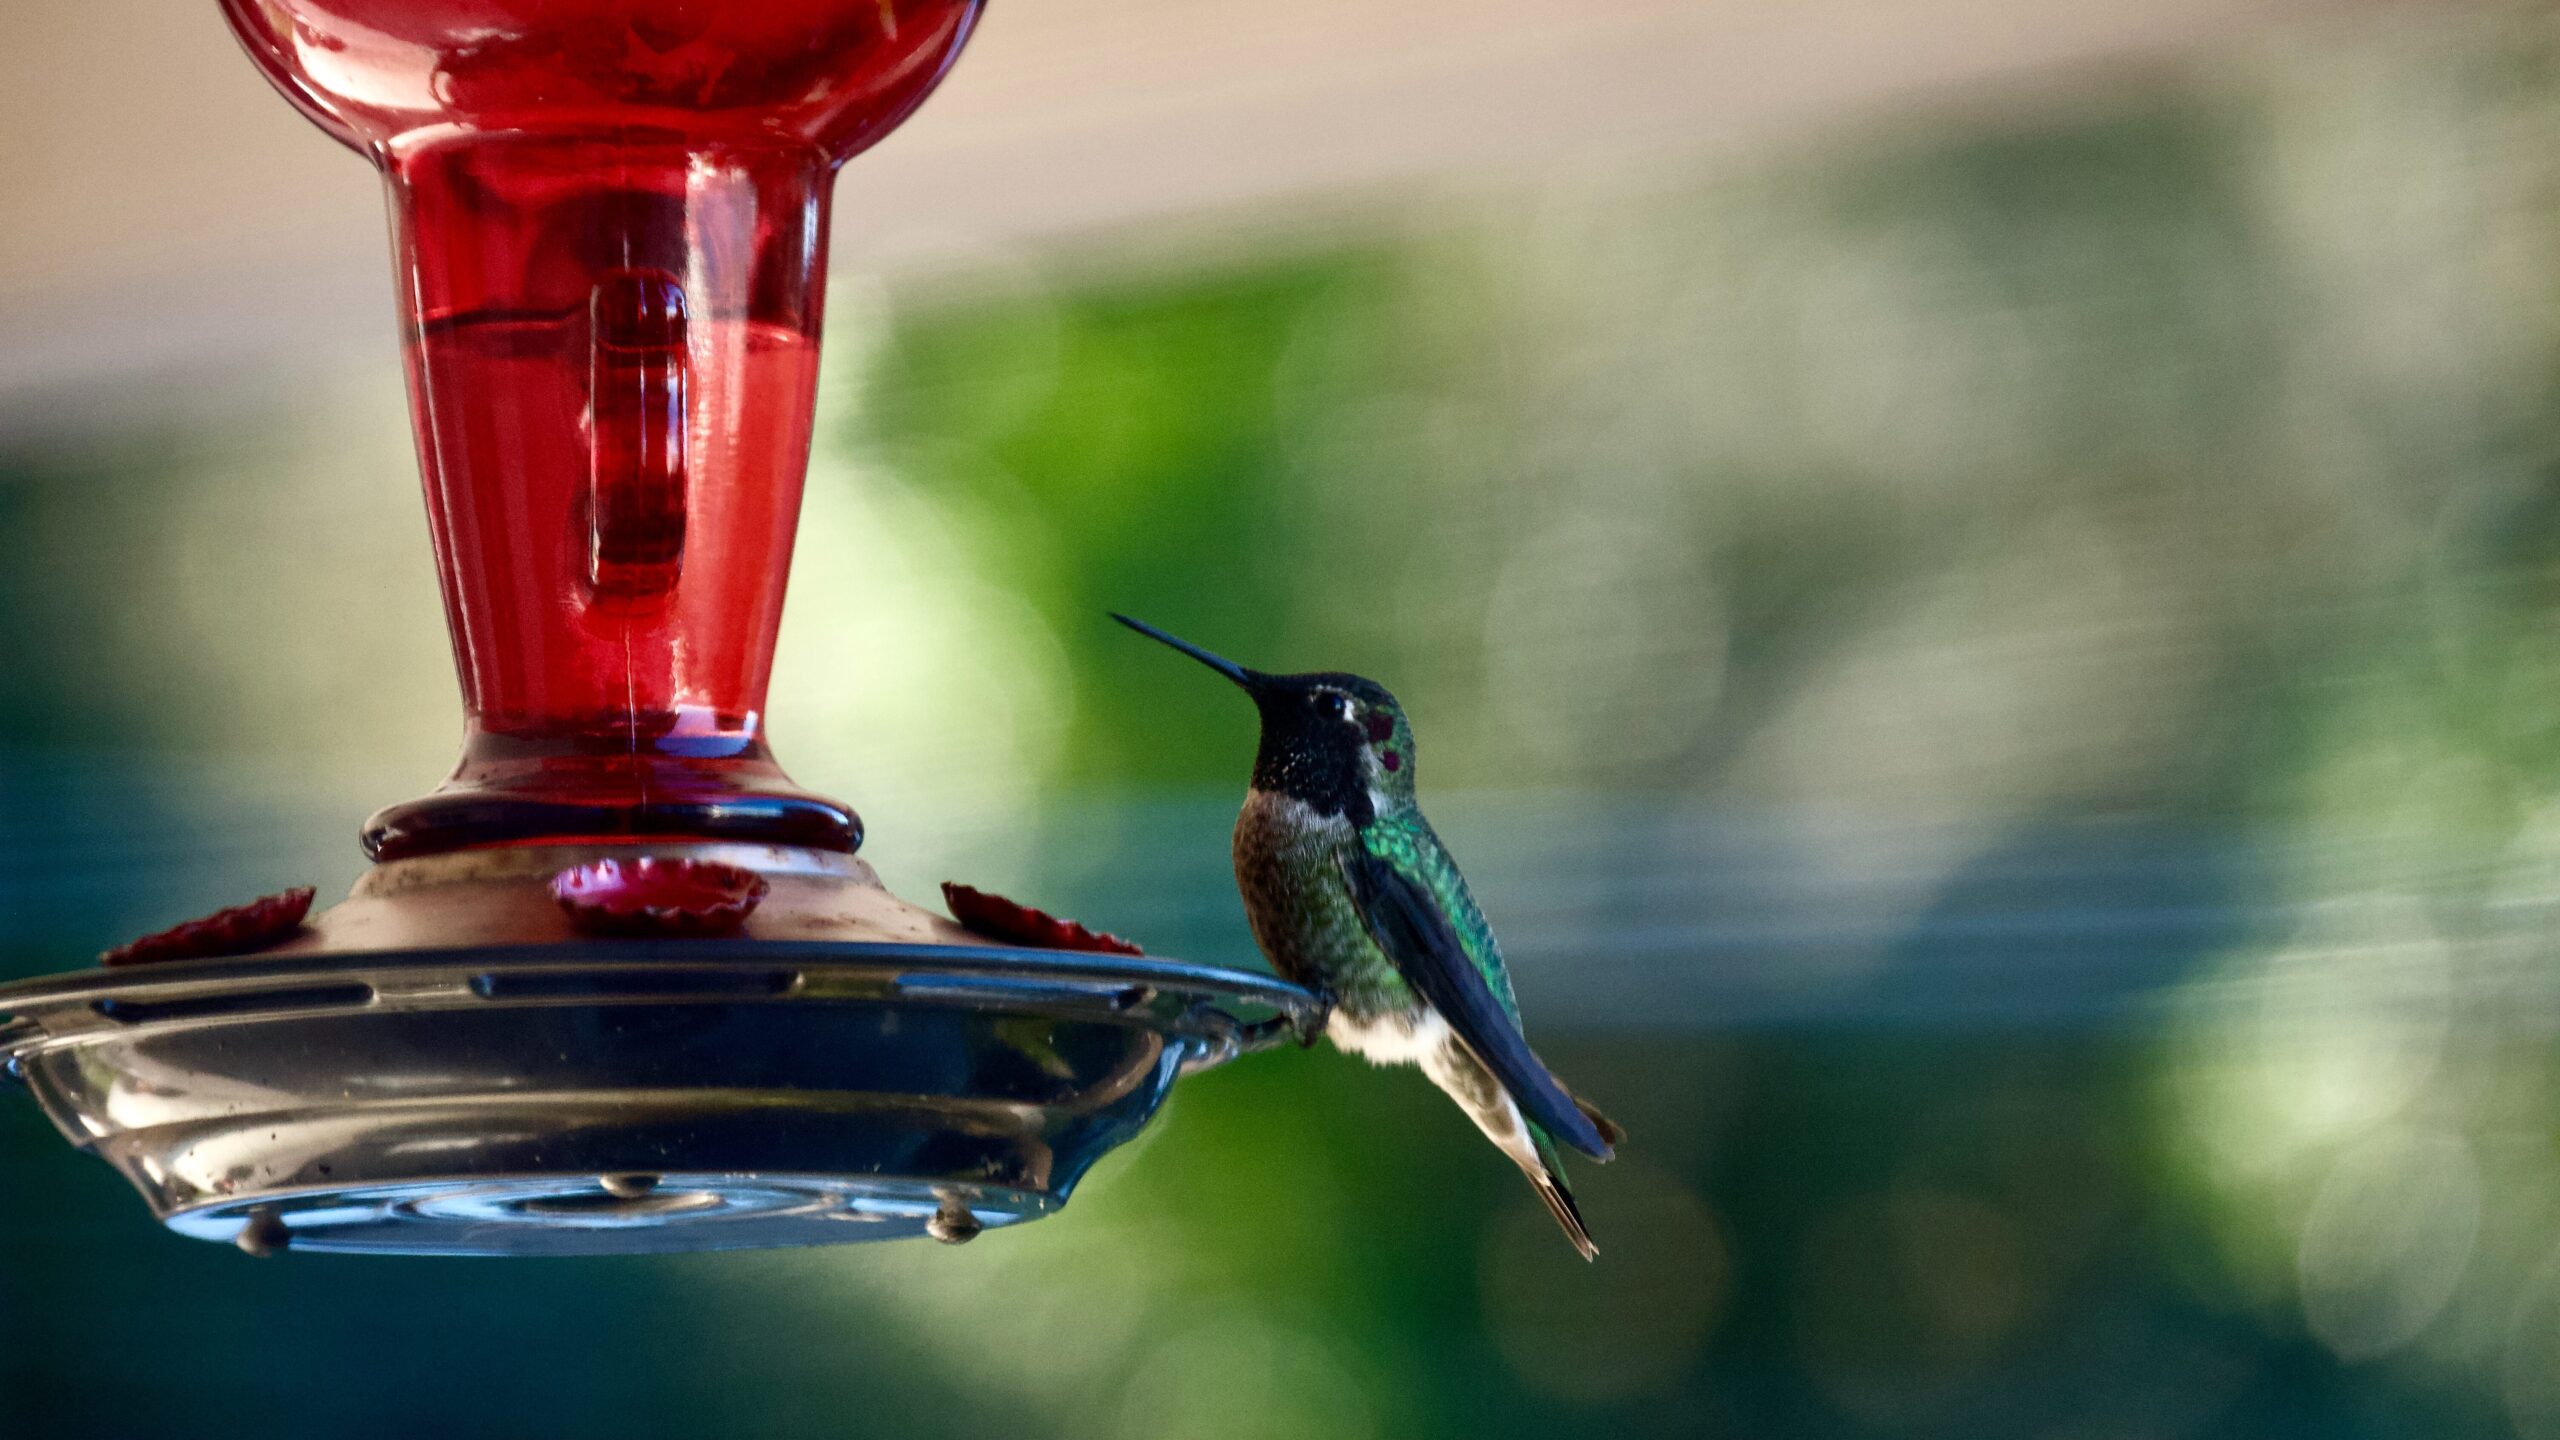 Hummingbird on a hummingbird feeder